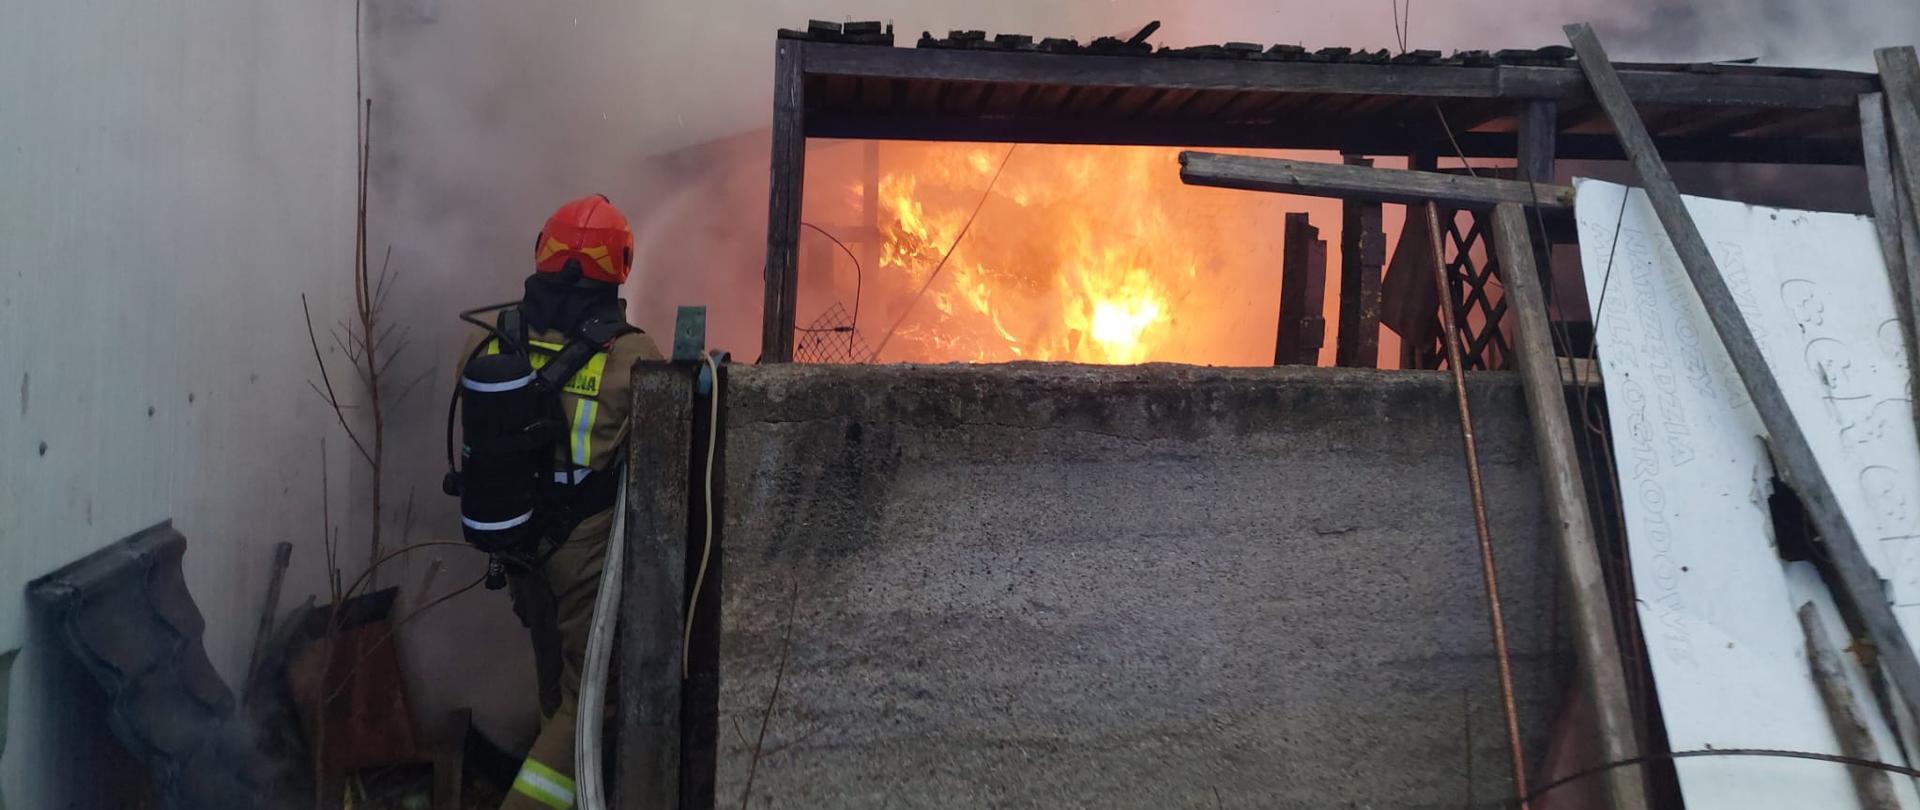 nad zdjęciu widać strażaka gaszącego paląca się wiatę